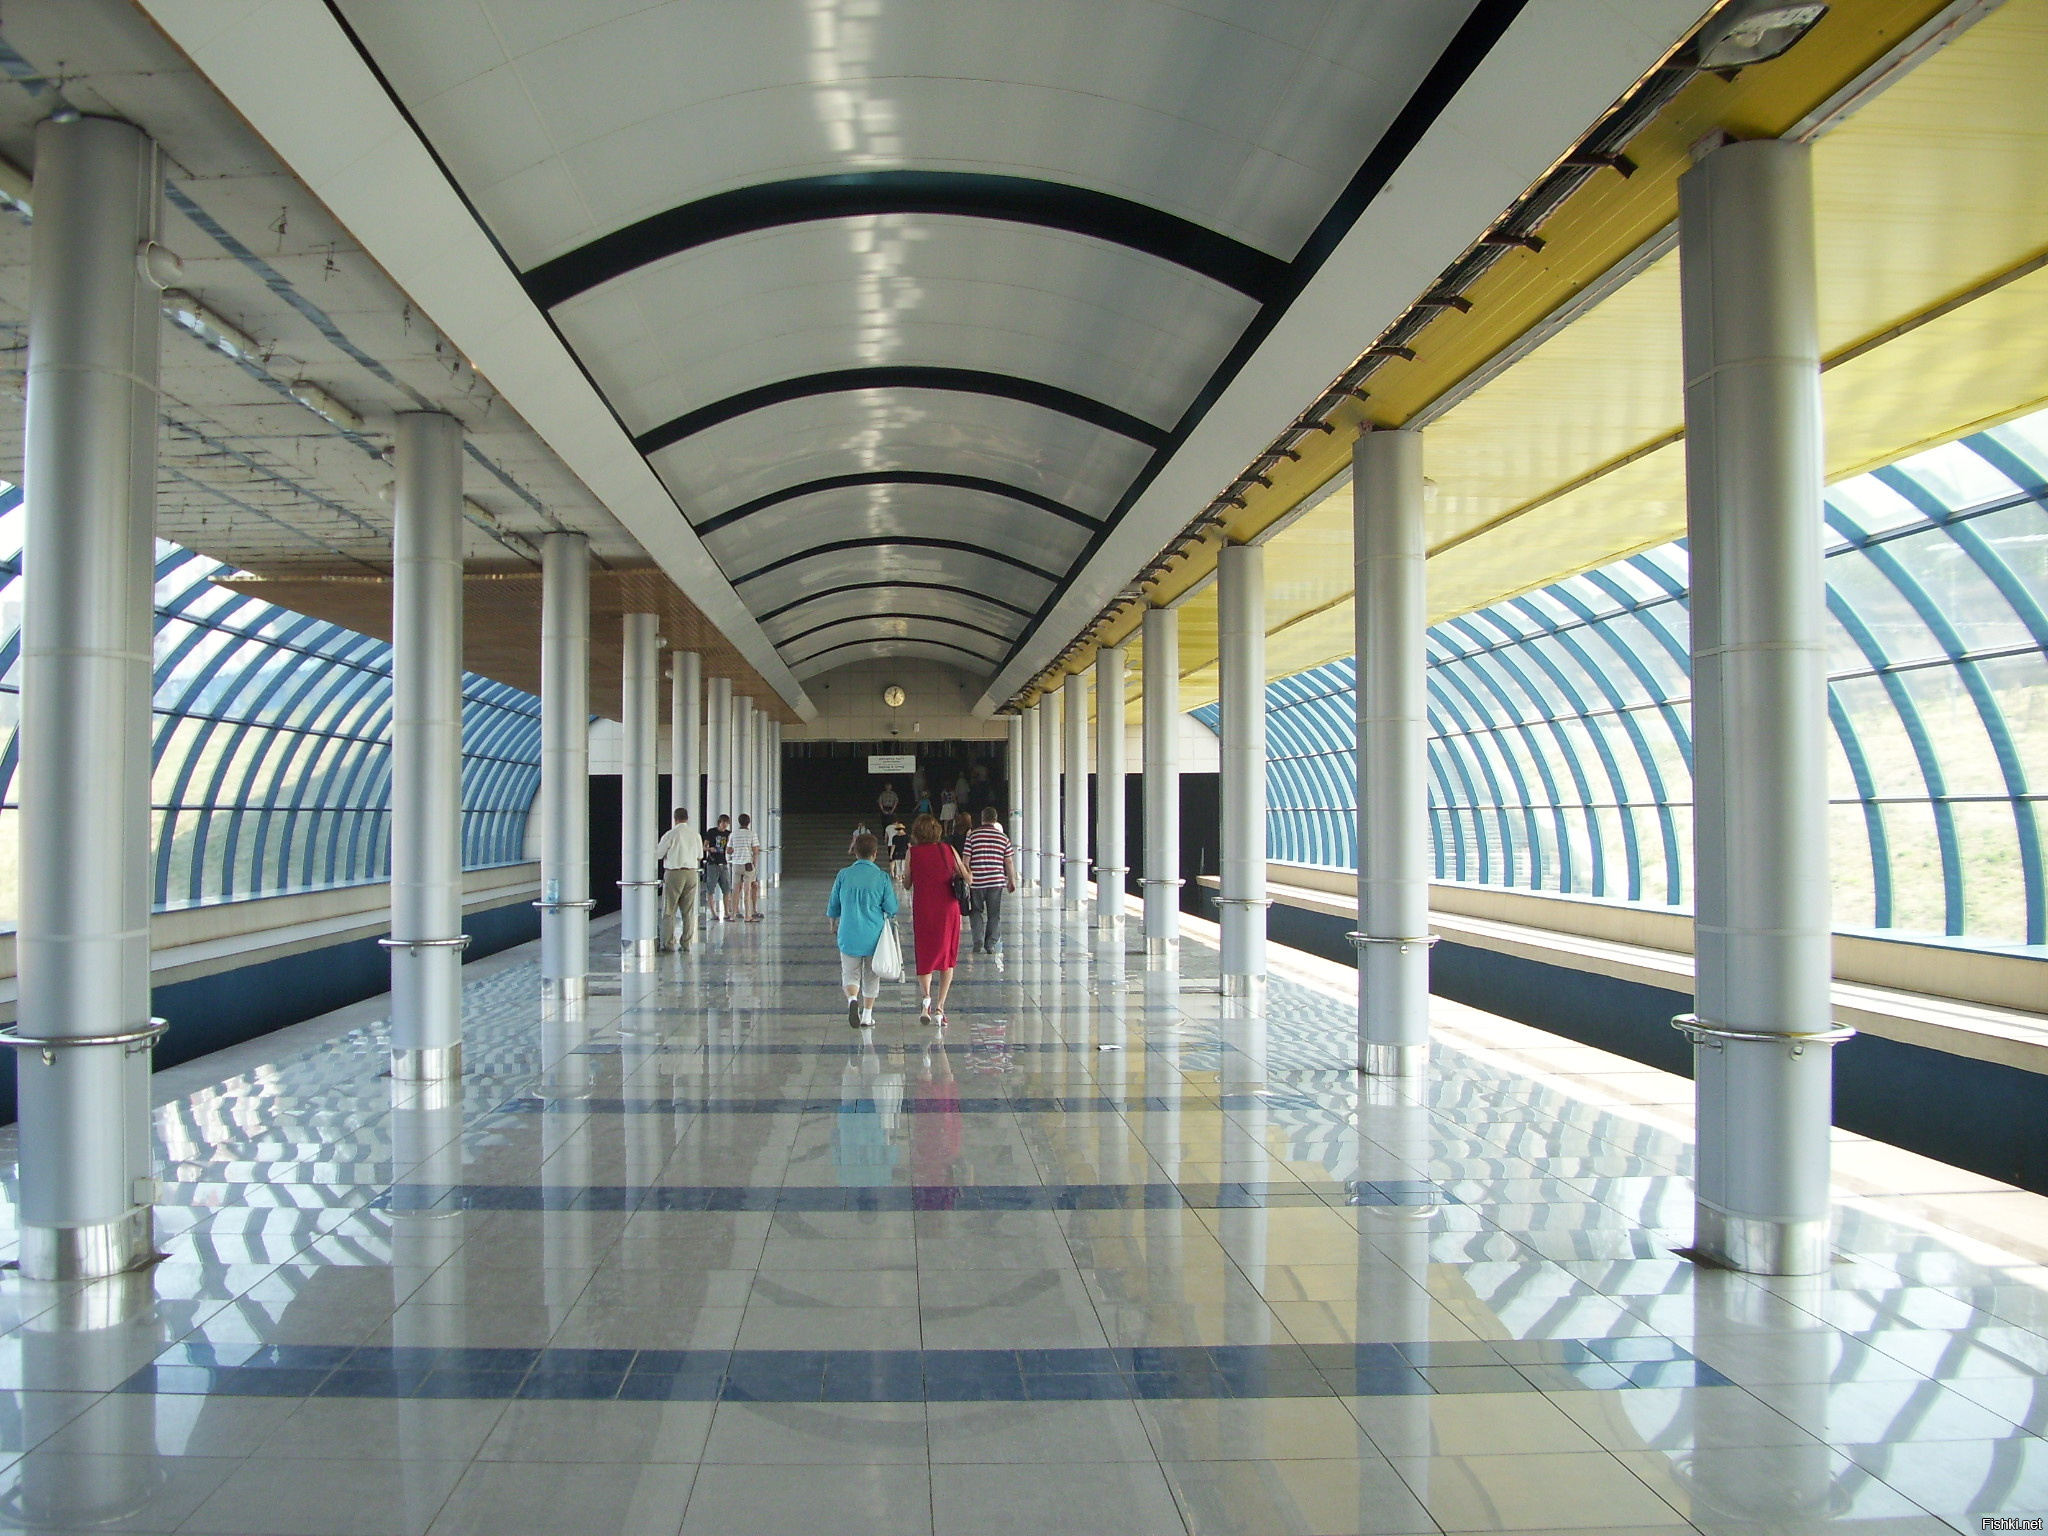 Одна из станций Казанского метро Аметьево